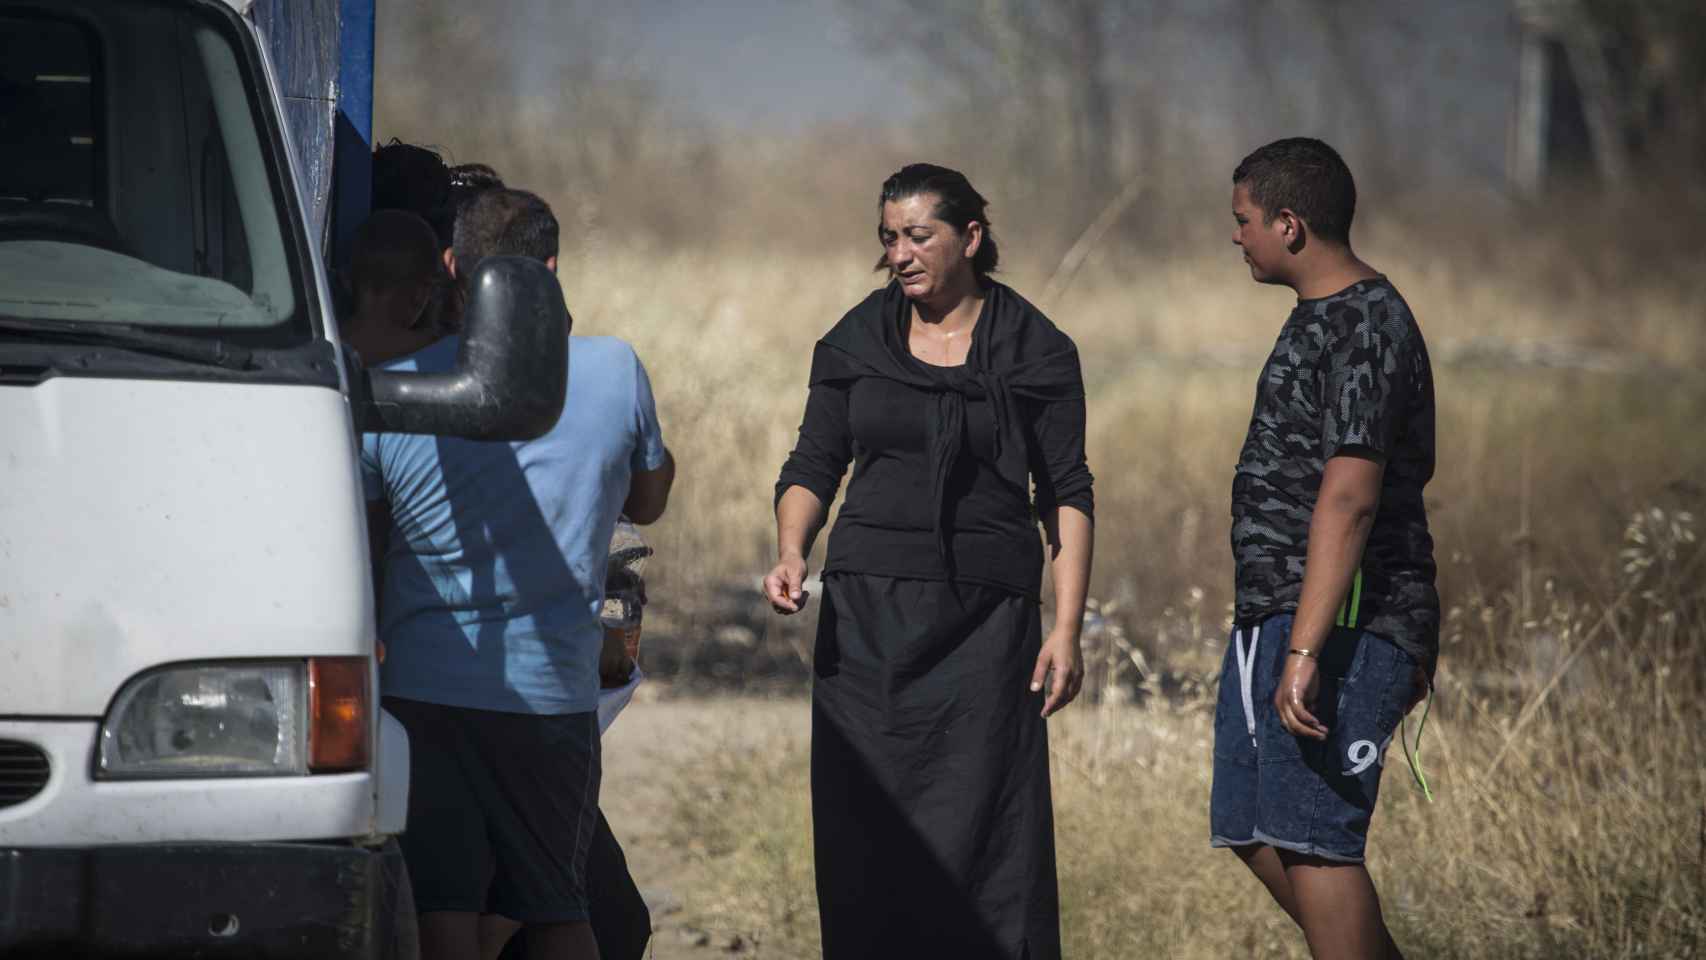 Sole y su familia tras haberlo perdido todo en el incendio. Foto: Fernando Ruso